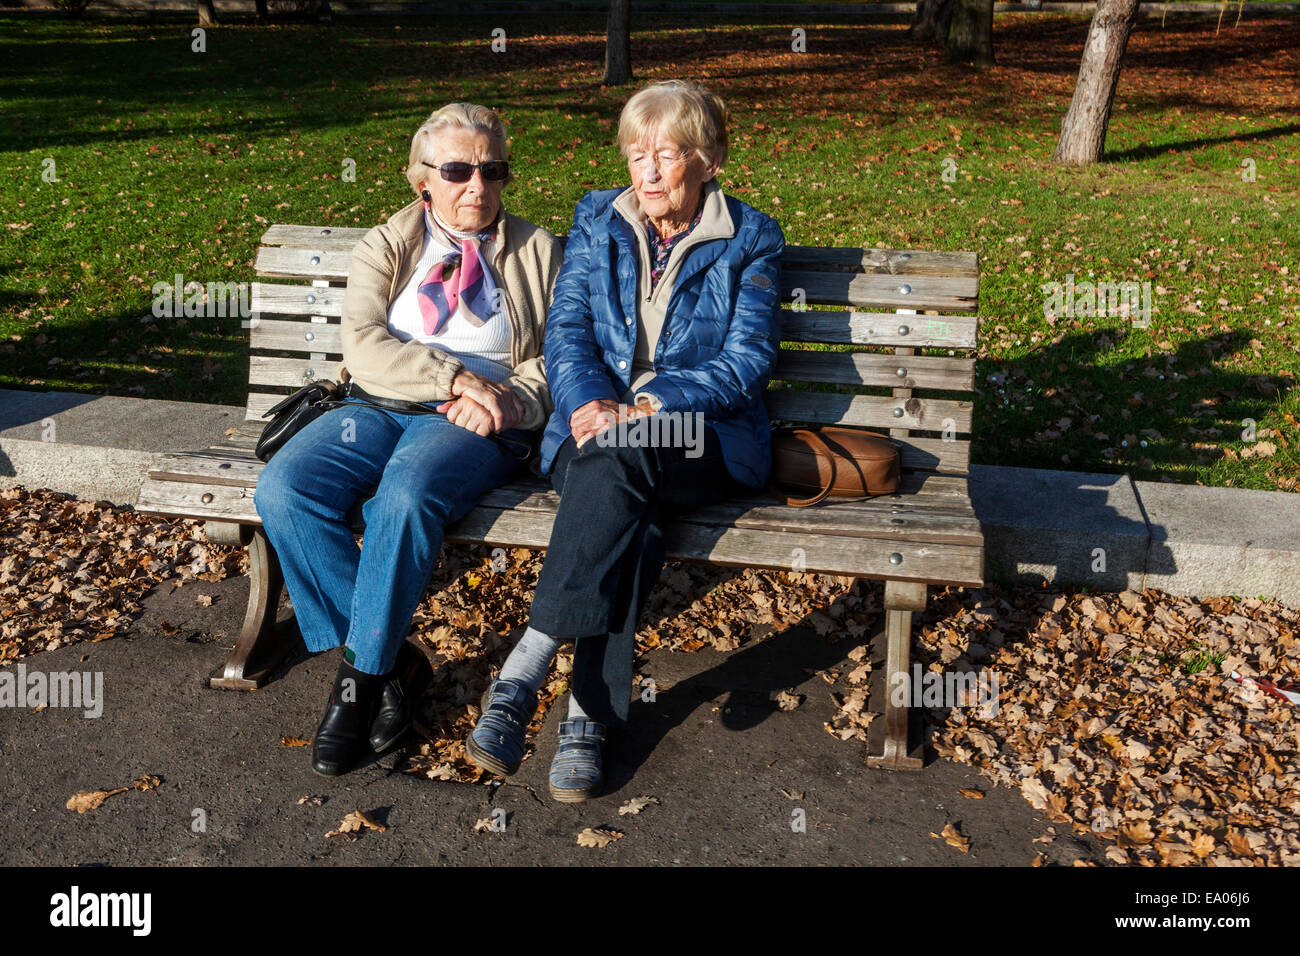 Un banc de personnes âgées, le reste des femmes retraitées sur le banc dans le parc République tchèque vieilles femmes banc, personnes âgées sur un banc Tchèques Seniors Banque D'Images